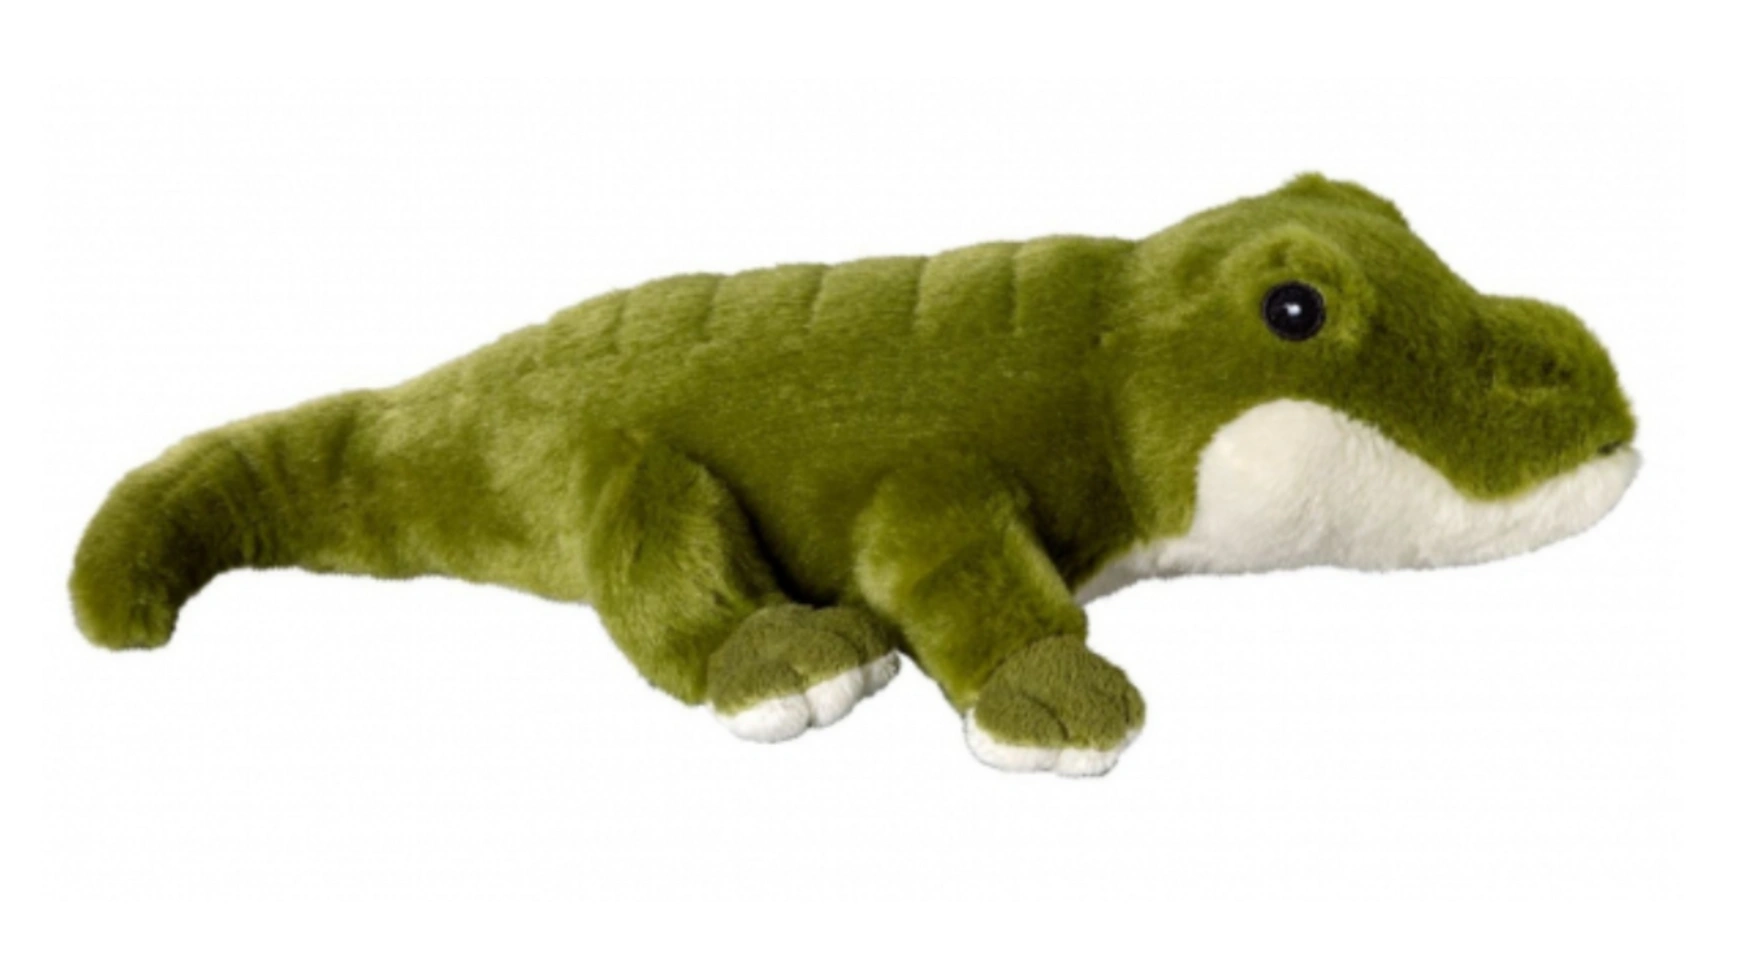 Bauer Eco-Line- I LIKE MY PLANET Плюшевый крокодил 28см мягкая игрушка крокодил зеленый 80 см